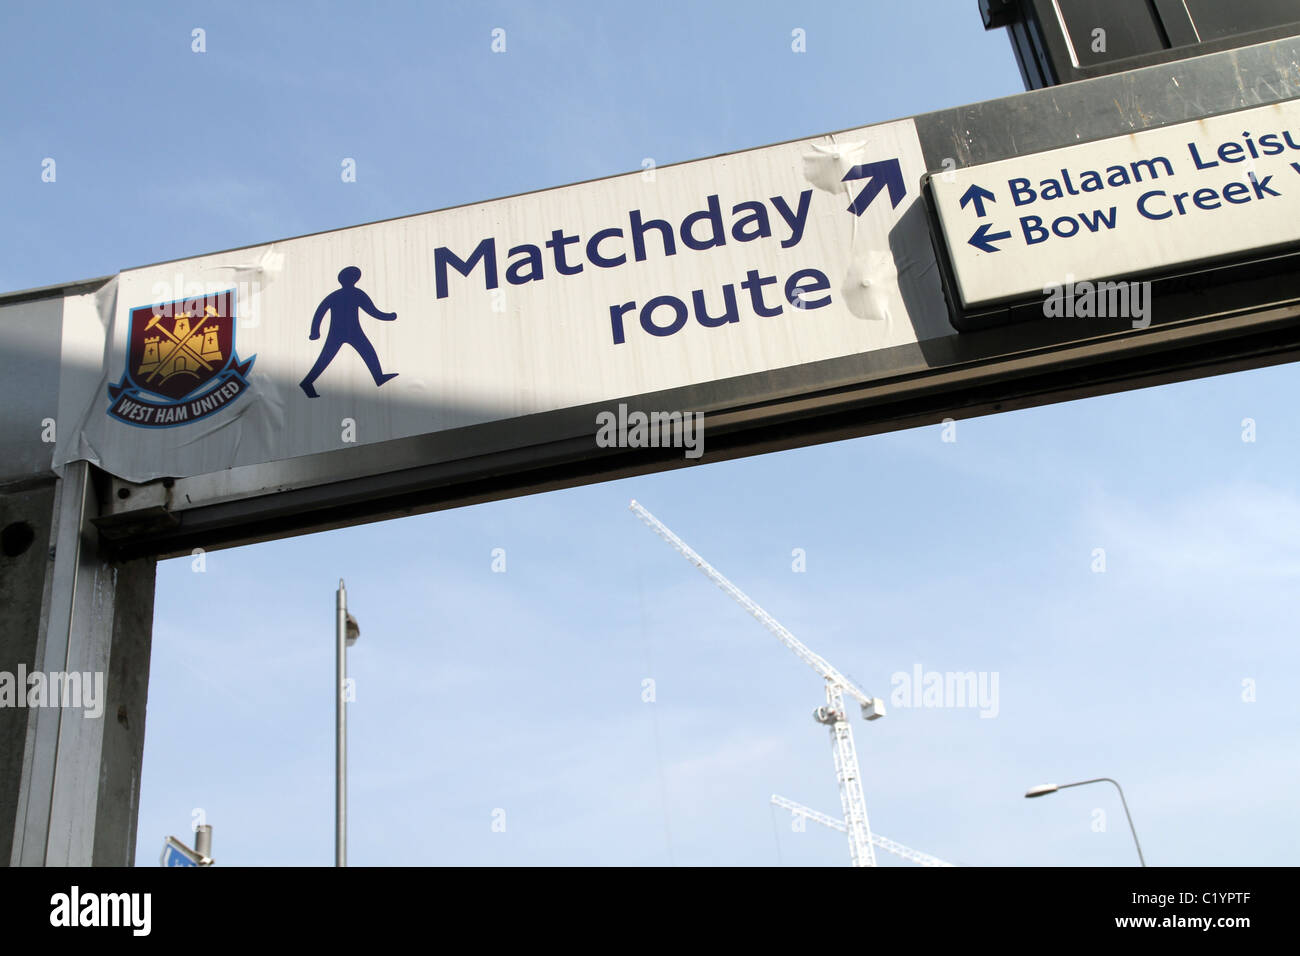 UK.FOOTBALL MATCH DAY SIGNE POUR WEST HAM STADIUM À LA STATION CANNING TOWN À LONDRES Banque D'Images